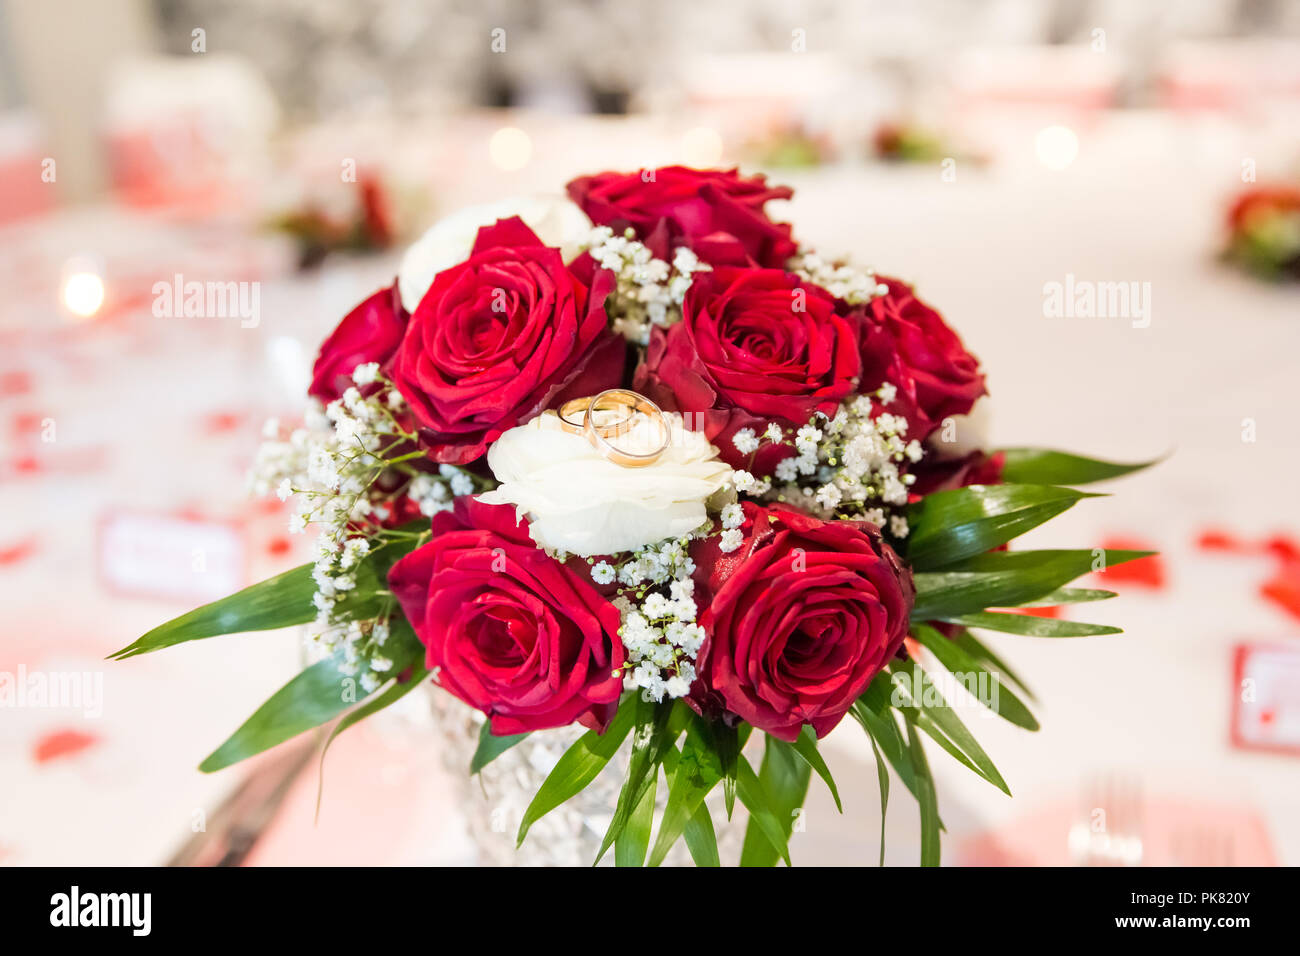 Trauringe auf weiße und rote Rosen Brautstrauß Stockfotografie - Alamy